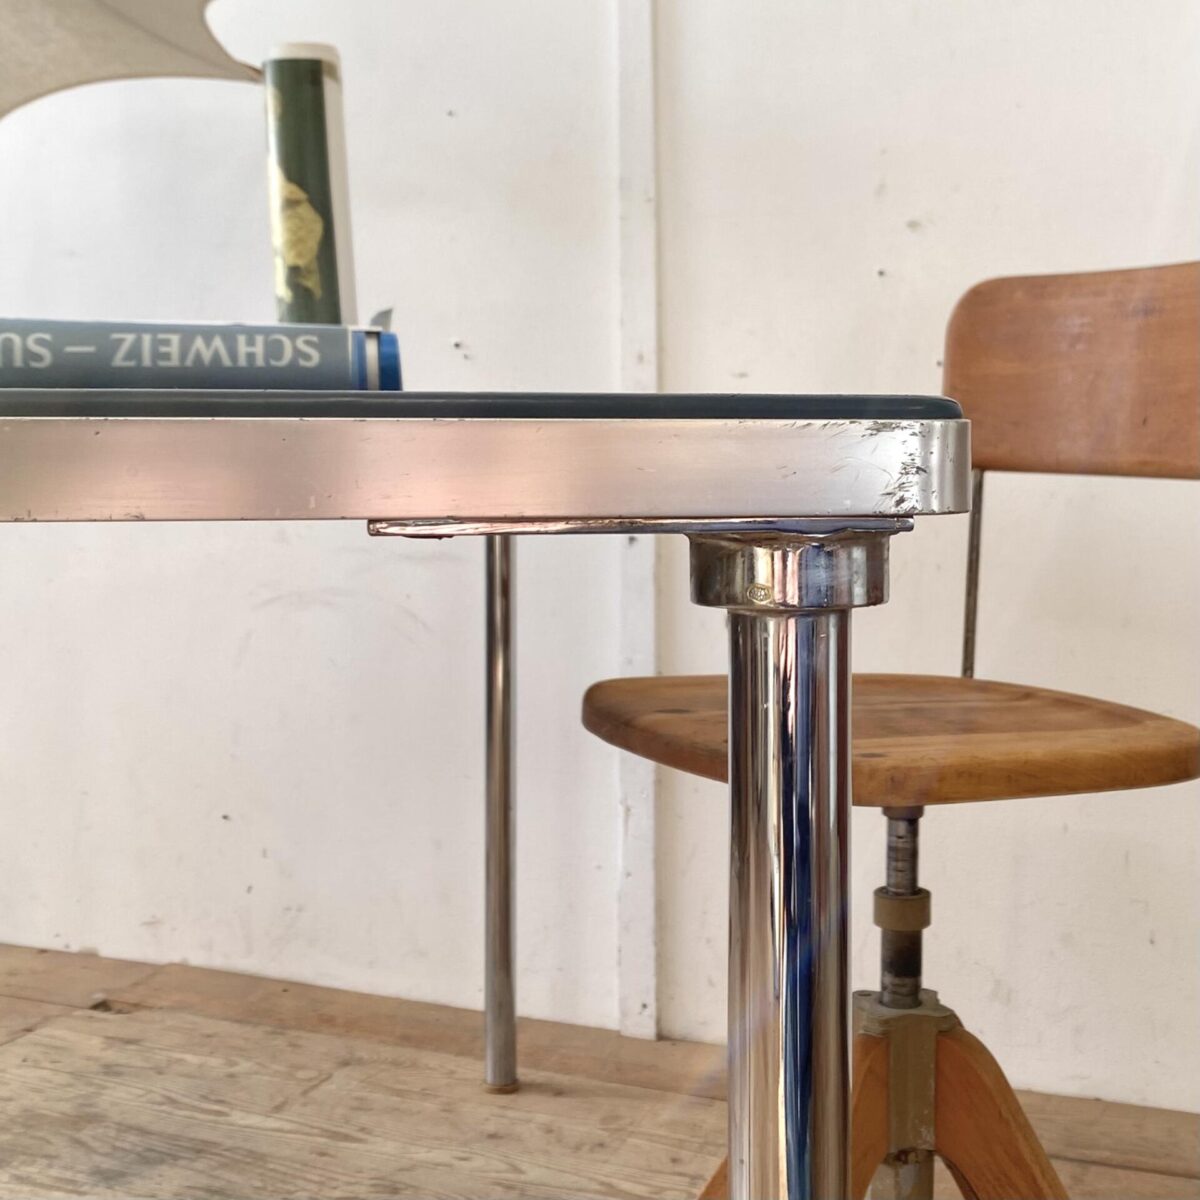 Deuxieme.shop Industrial design. Blauer Arbeitstisch mit verchromten Metall Beinen. 160x80.5cm Höhe 74cm. Das Tischblatt hat eine blau eingefärbte Kunststoff Oberfläche, ähnlich einer Schneidunterlage nur etwas härter. An den Kanten leicht gerundet und Aluminium Kante eingefasst. Die verchromten Stahlbeine mit Gummifüssen, können abgeschraubt werden. Es finden 4-6 Stühle um den Tisch Platz. 